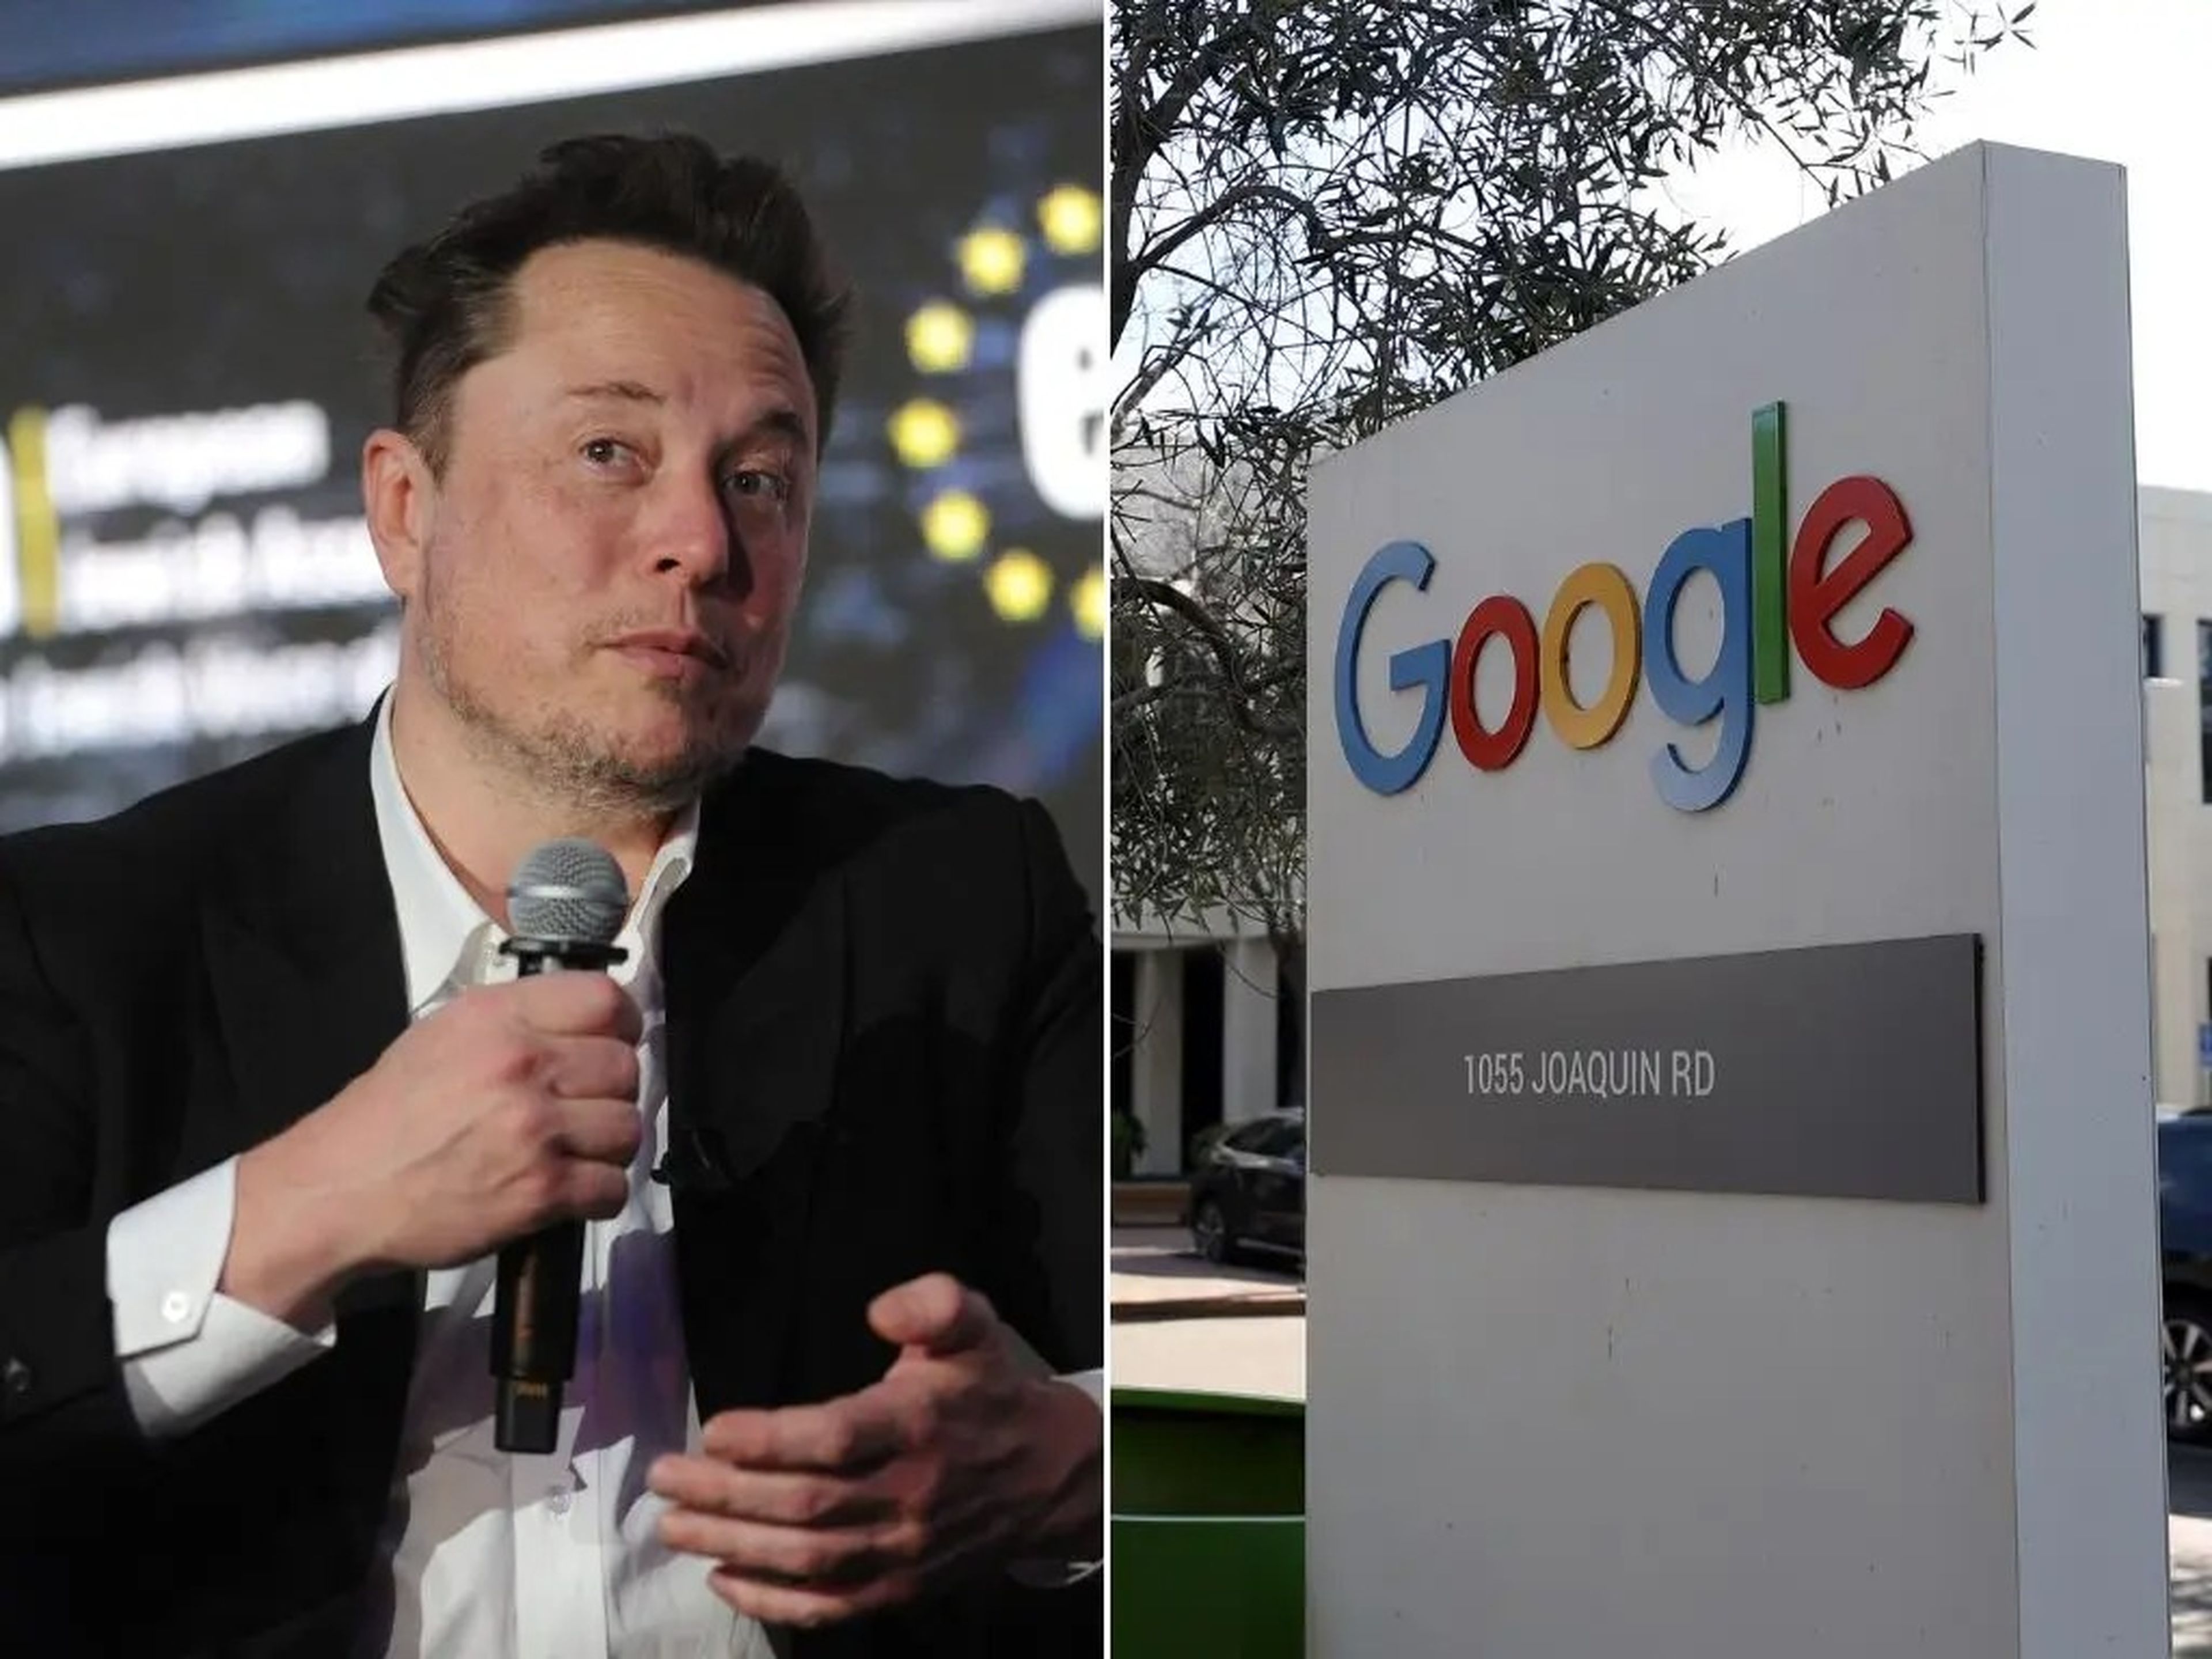 "Me alegro de que a Google se le haya ido la mano con la generación de imágenes de su IA, ya que ha dejado clara su programación racista y contraria a la civilización", ha asegurado Elon Musk.